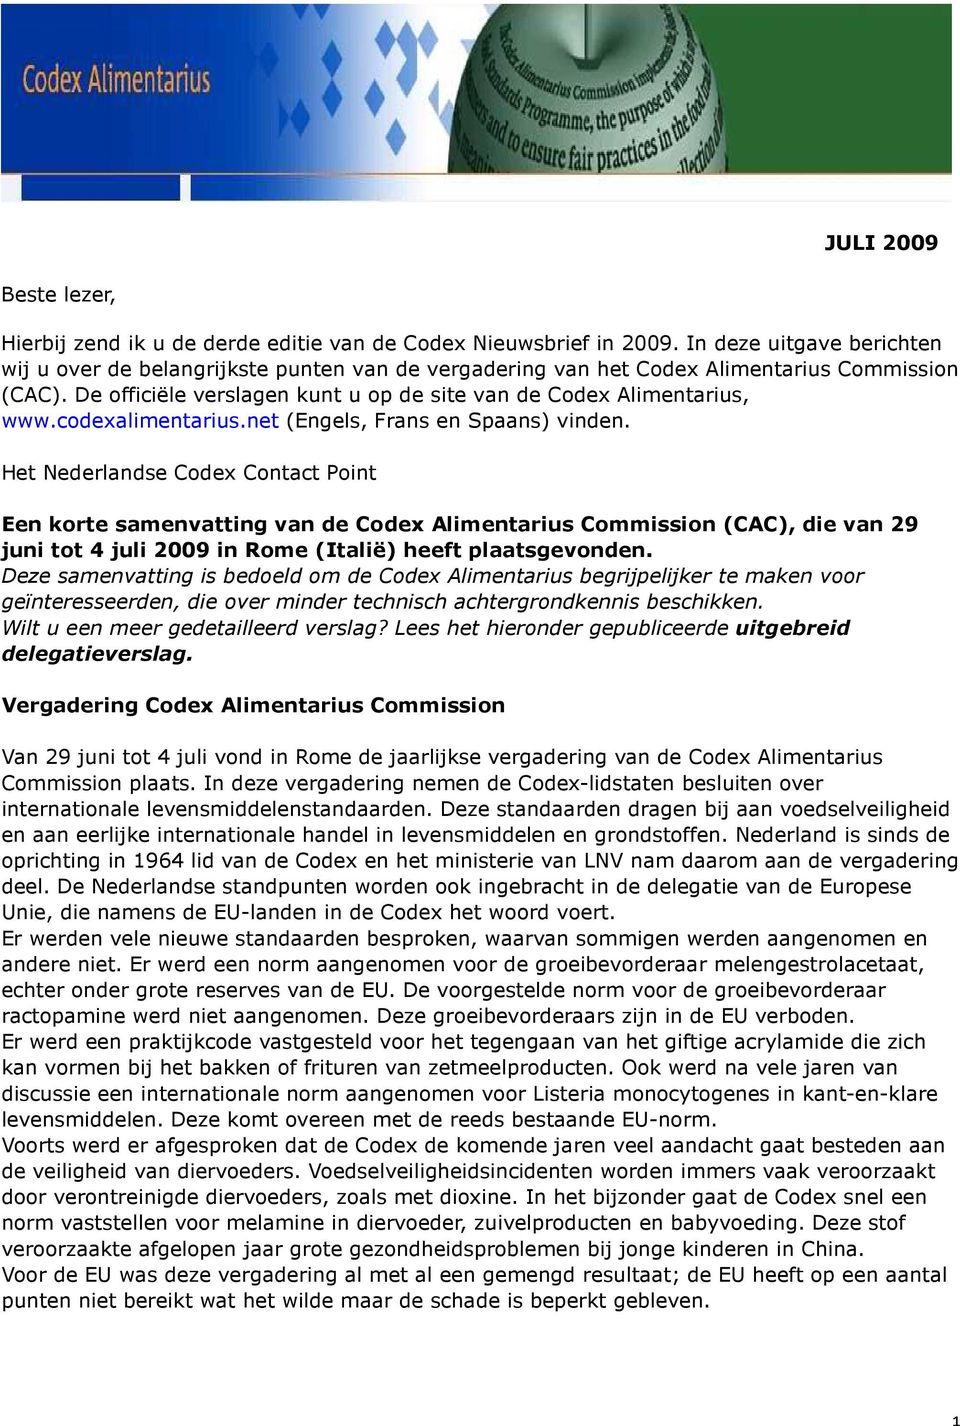 codexalimentarius.net (Engels, Frans en Spaans) vinden.